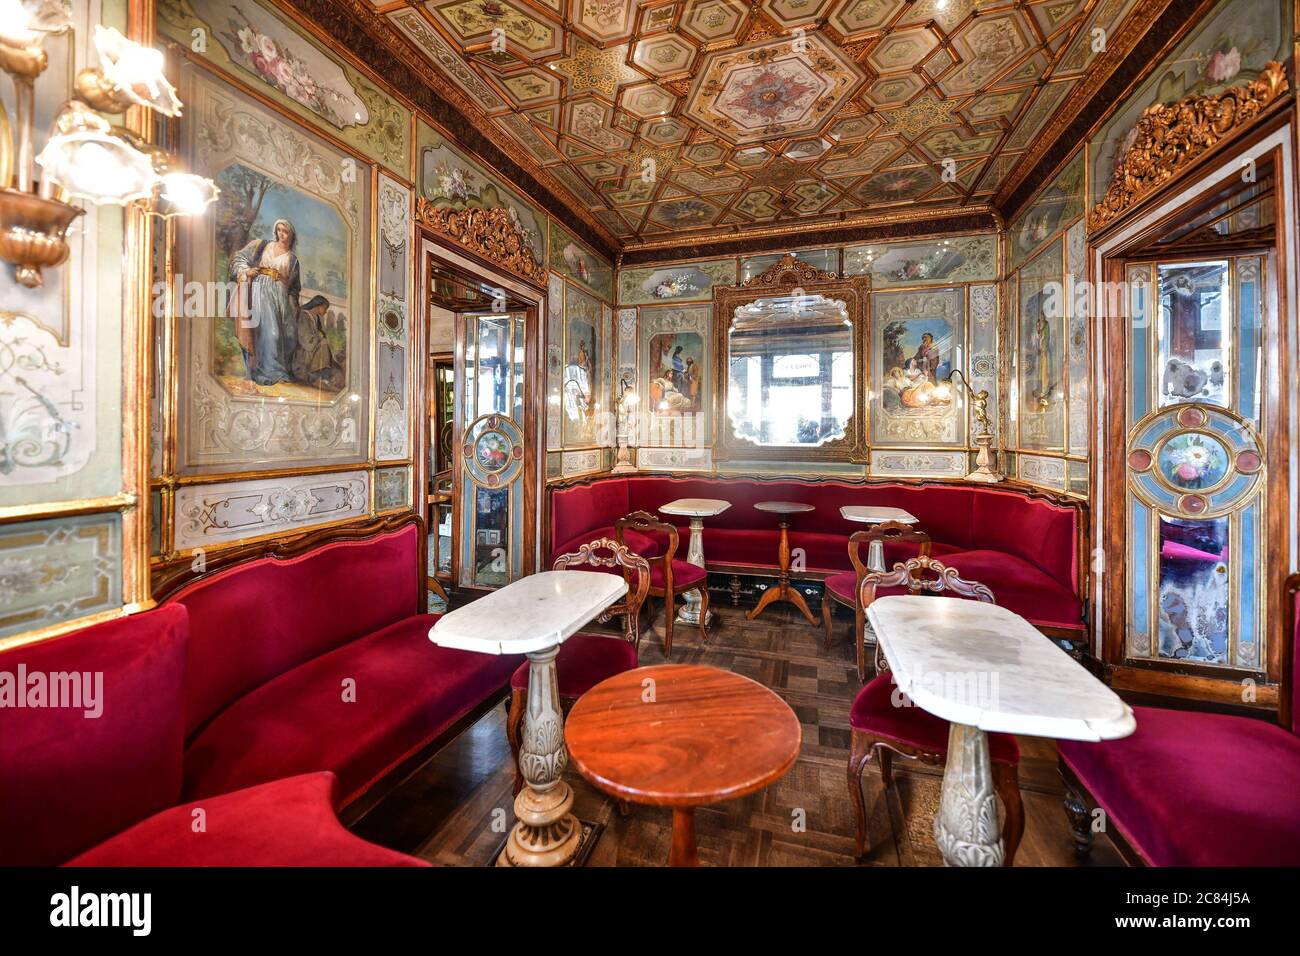 Italien, Venedig: Das Florian Cafe oder Caffe Florian ist das älteste, berühmte und luxuriöse Kaffeehaus am Markusplatz (Piazza San Marco). Gegründet in 1 Stockfoto